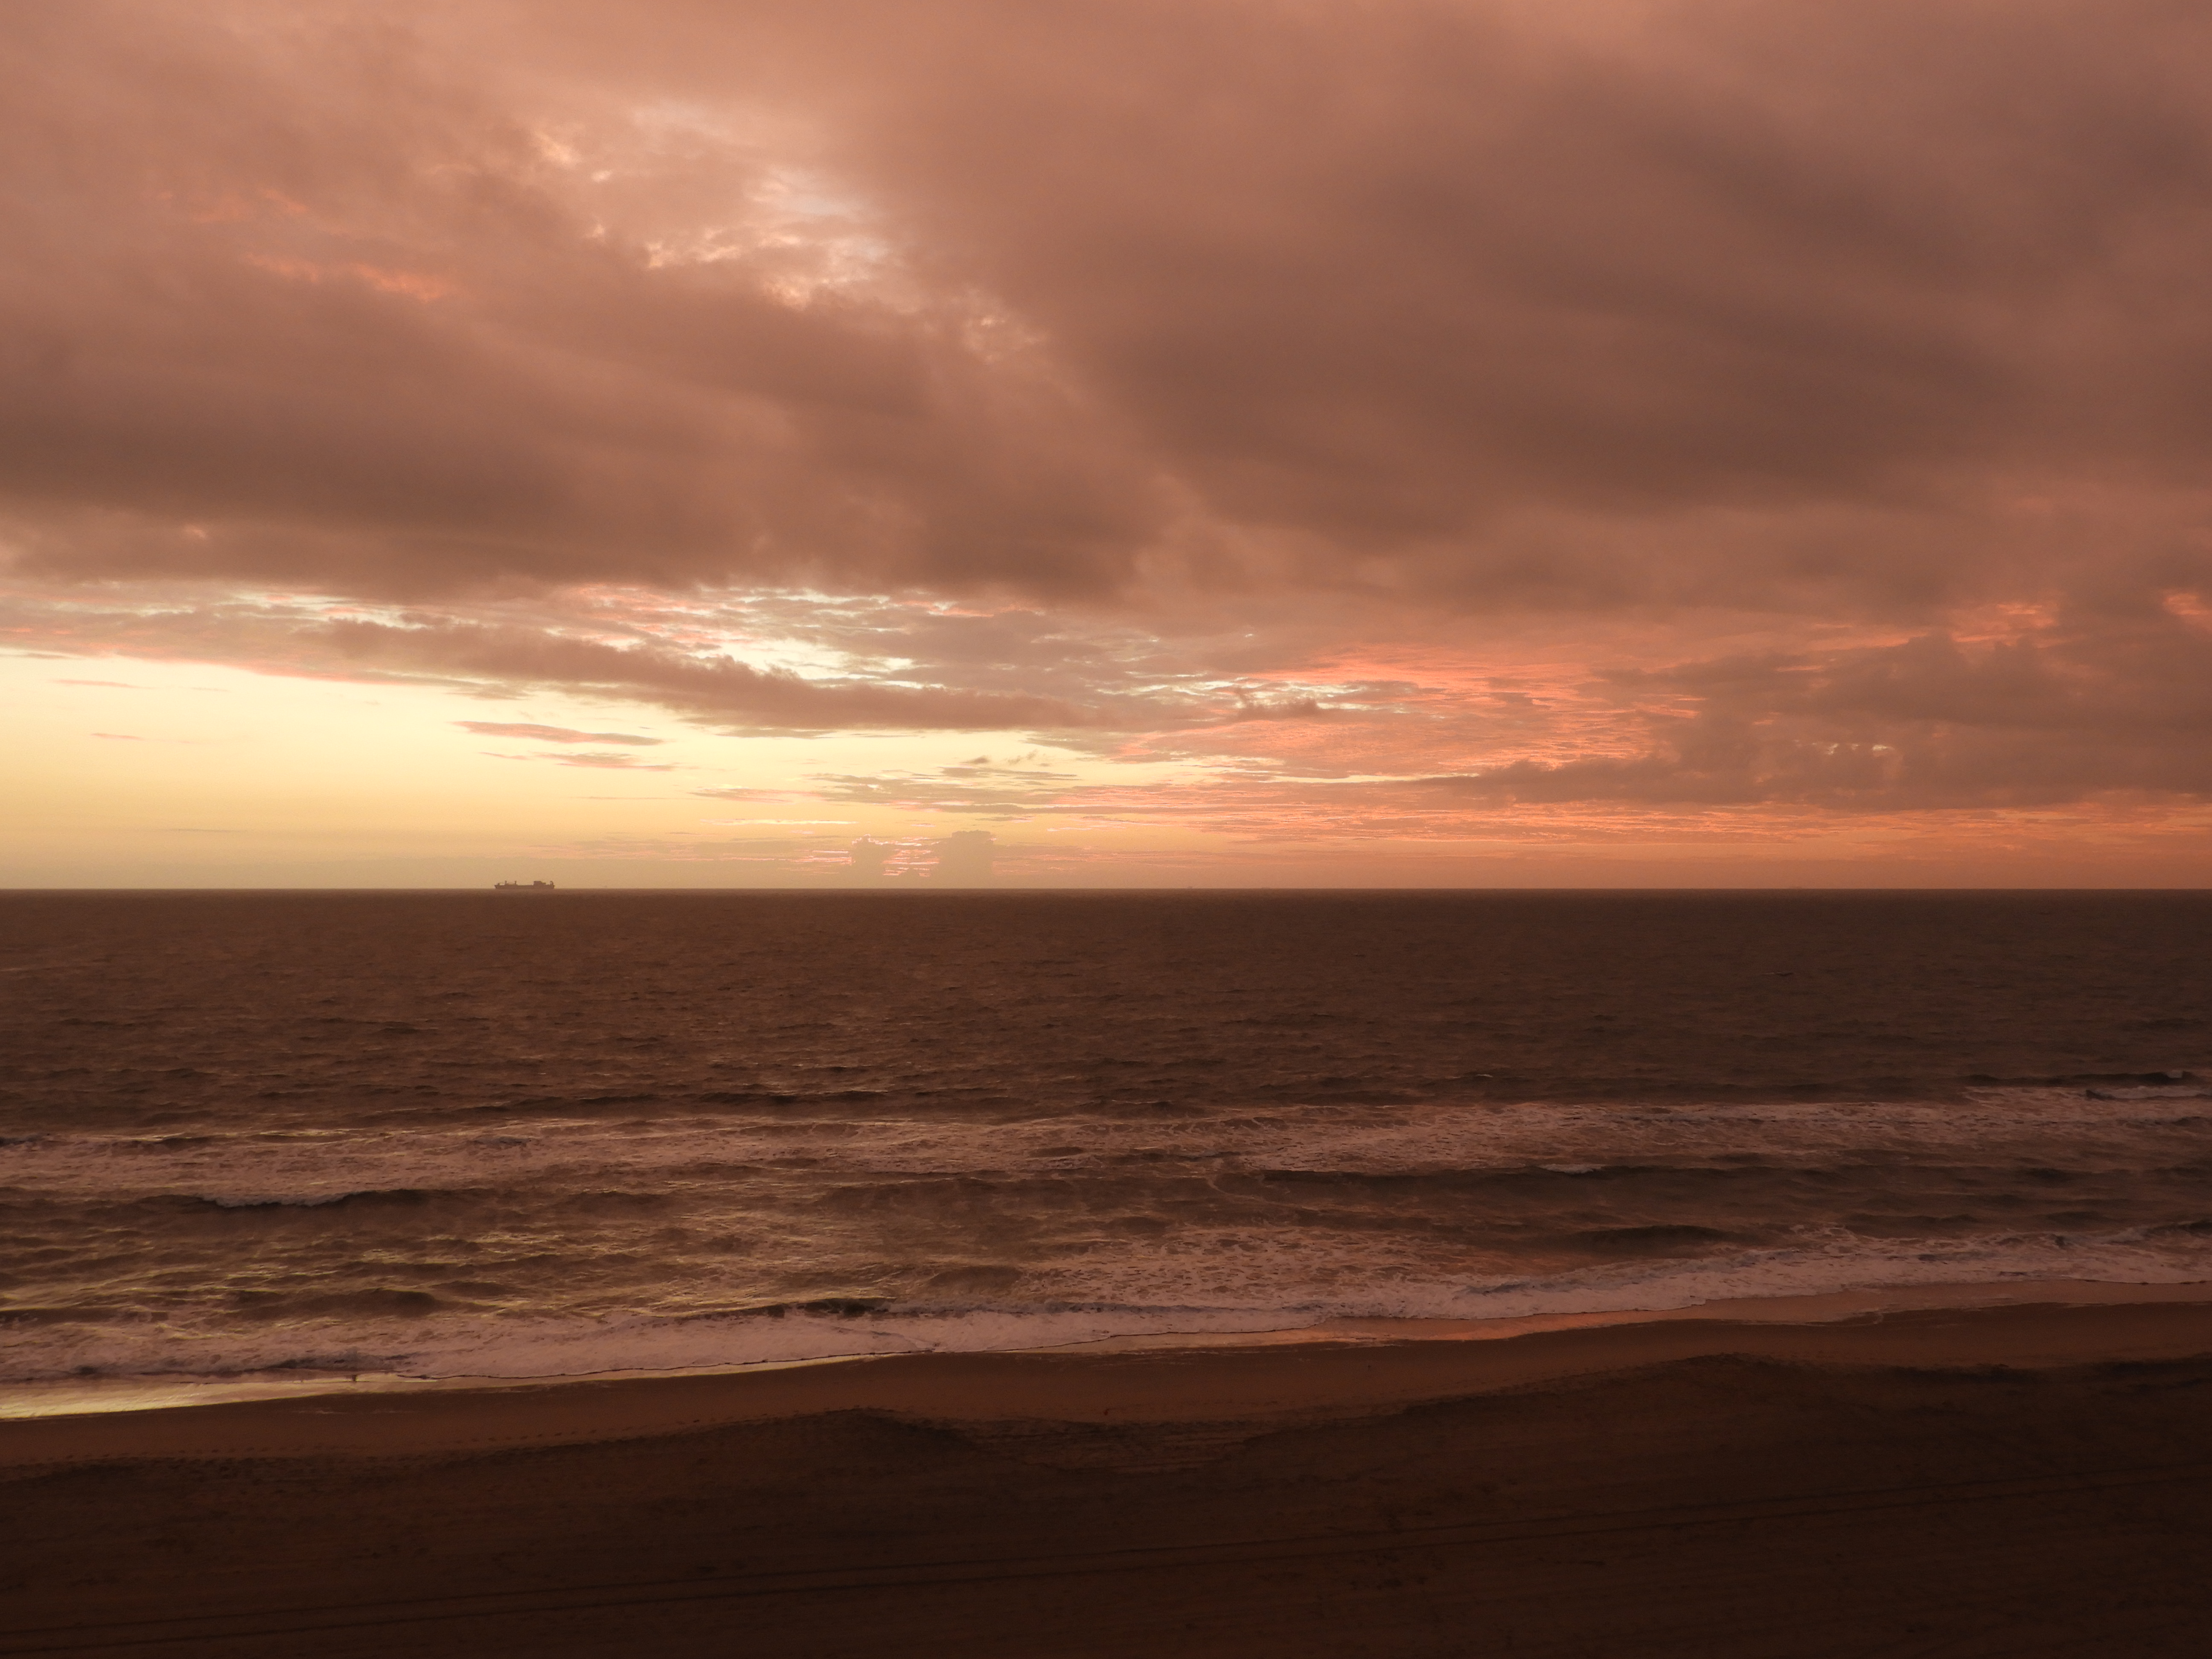 Sunrise at Virginia Beach, Virginia